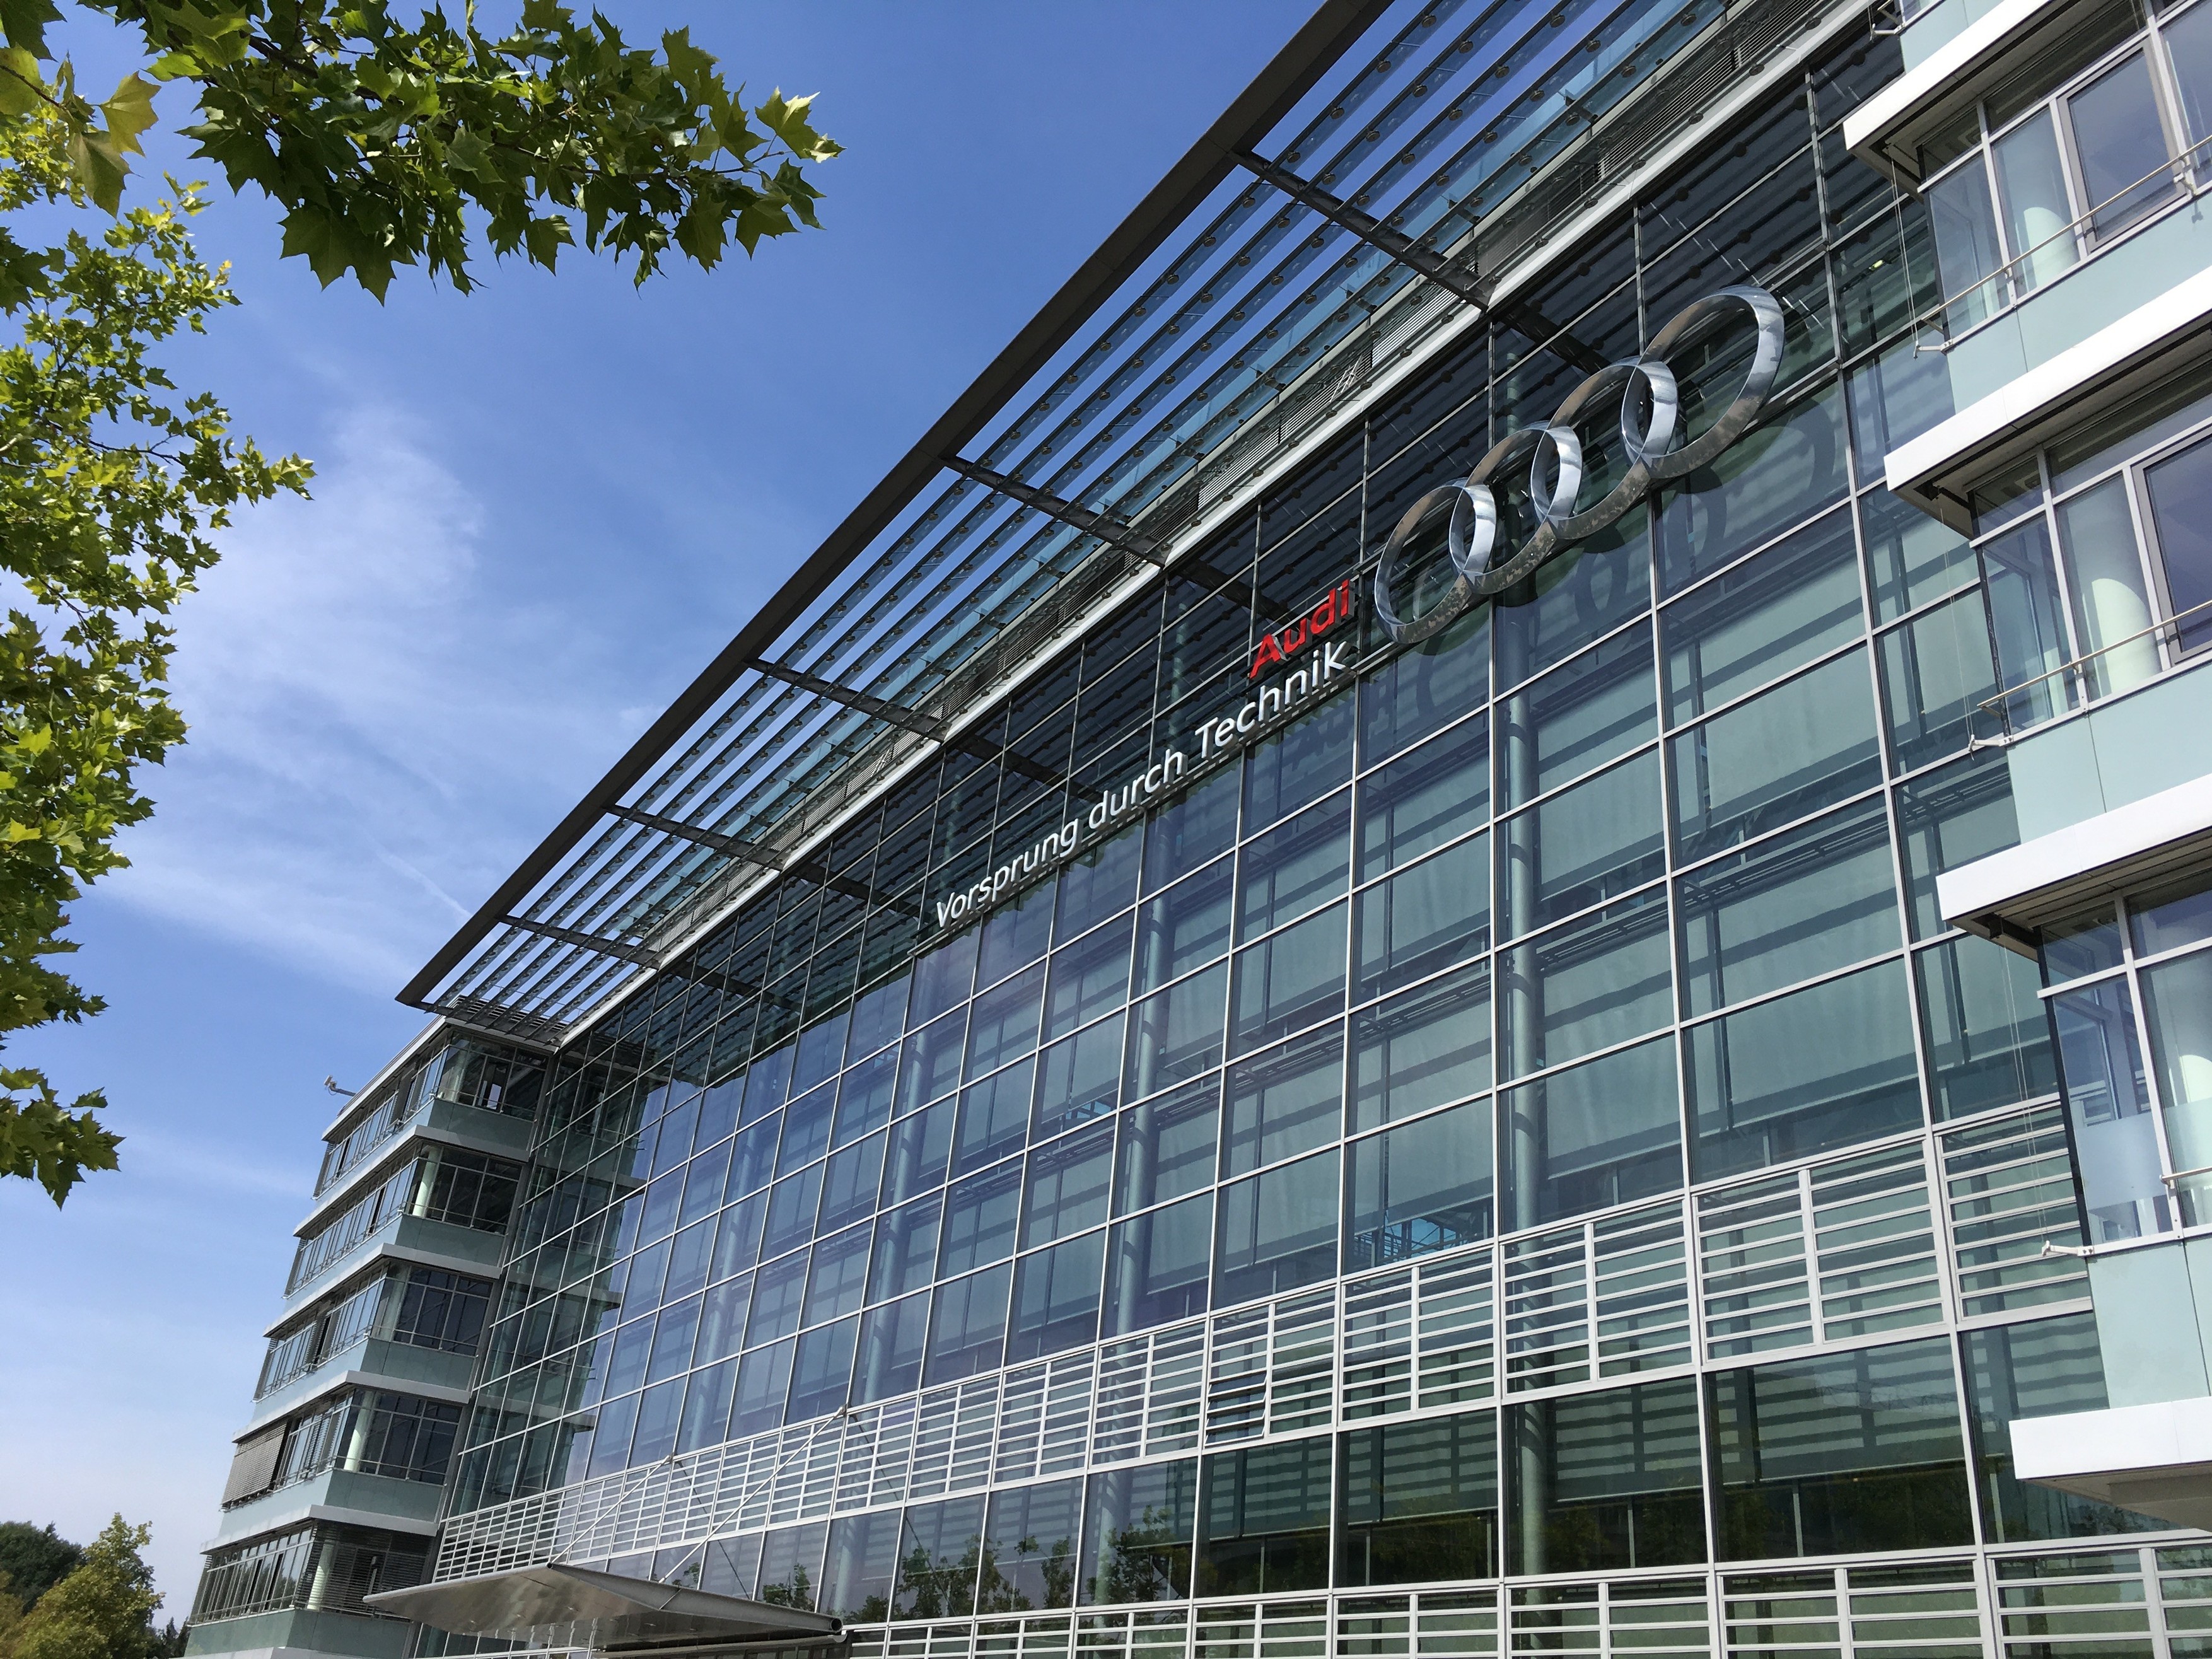 Steklena moderna zgradba z Audi logotipom, na levi strani drevo, nad zgradbo modro nebo.